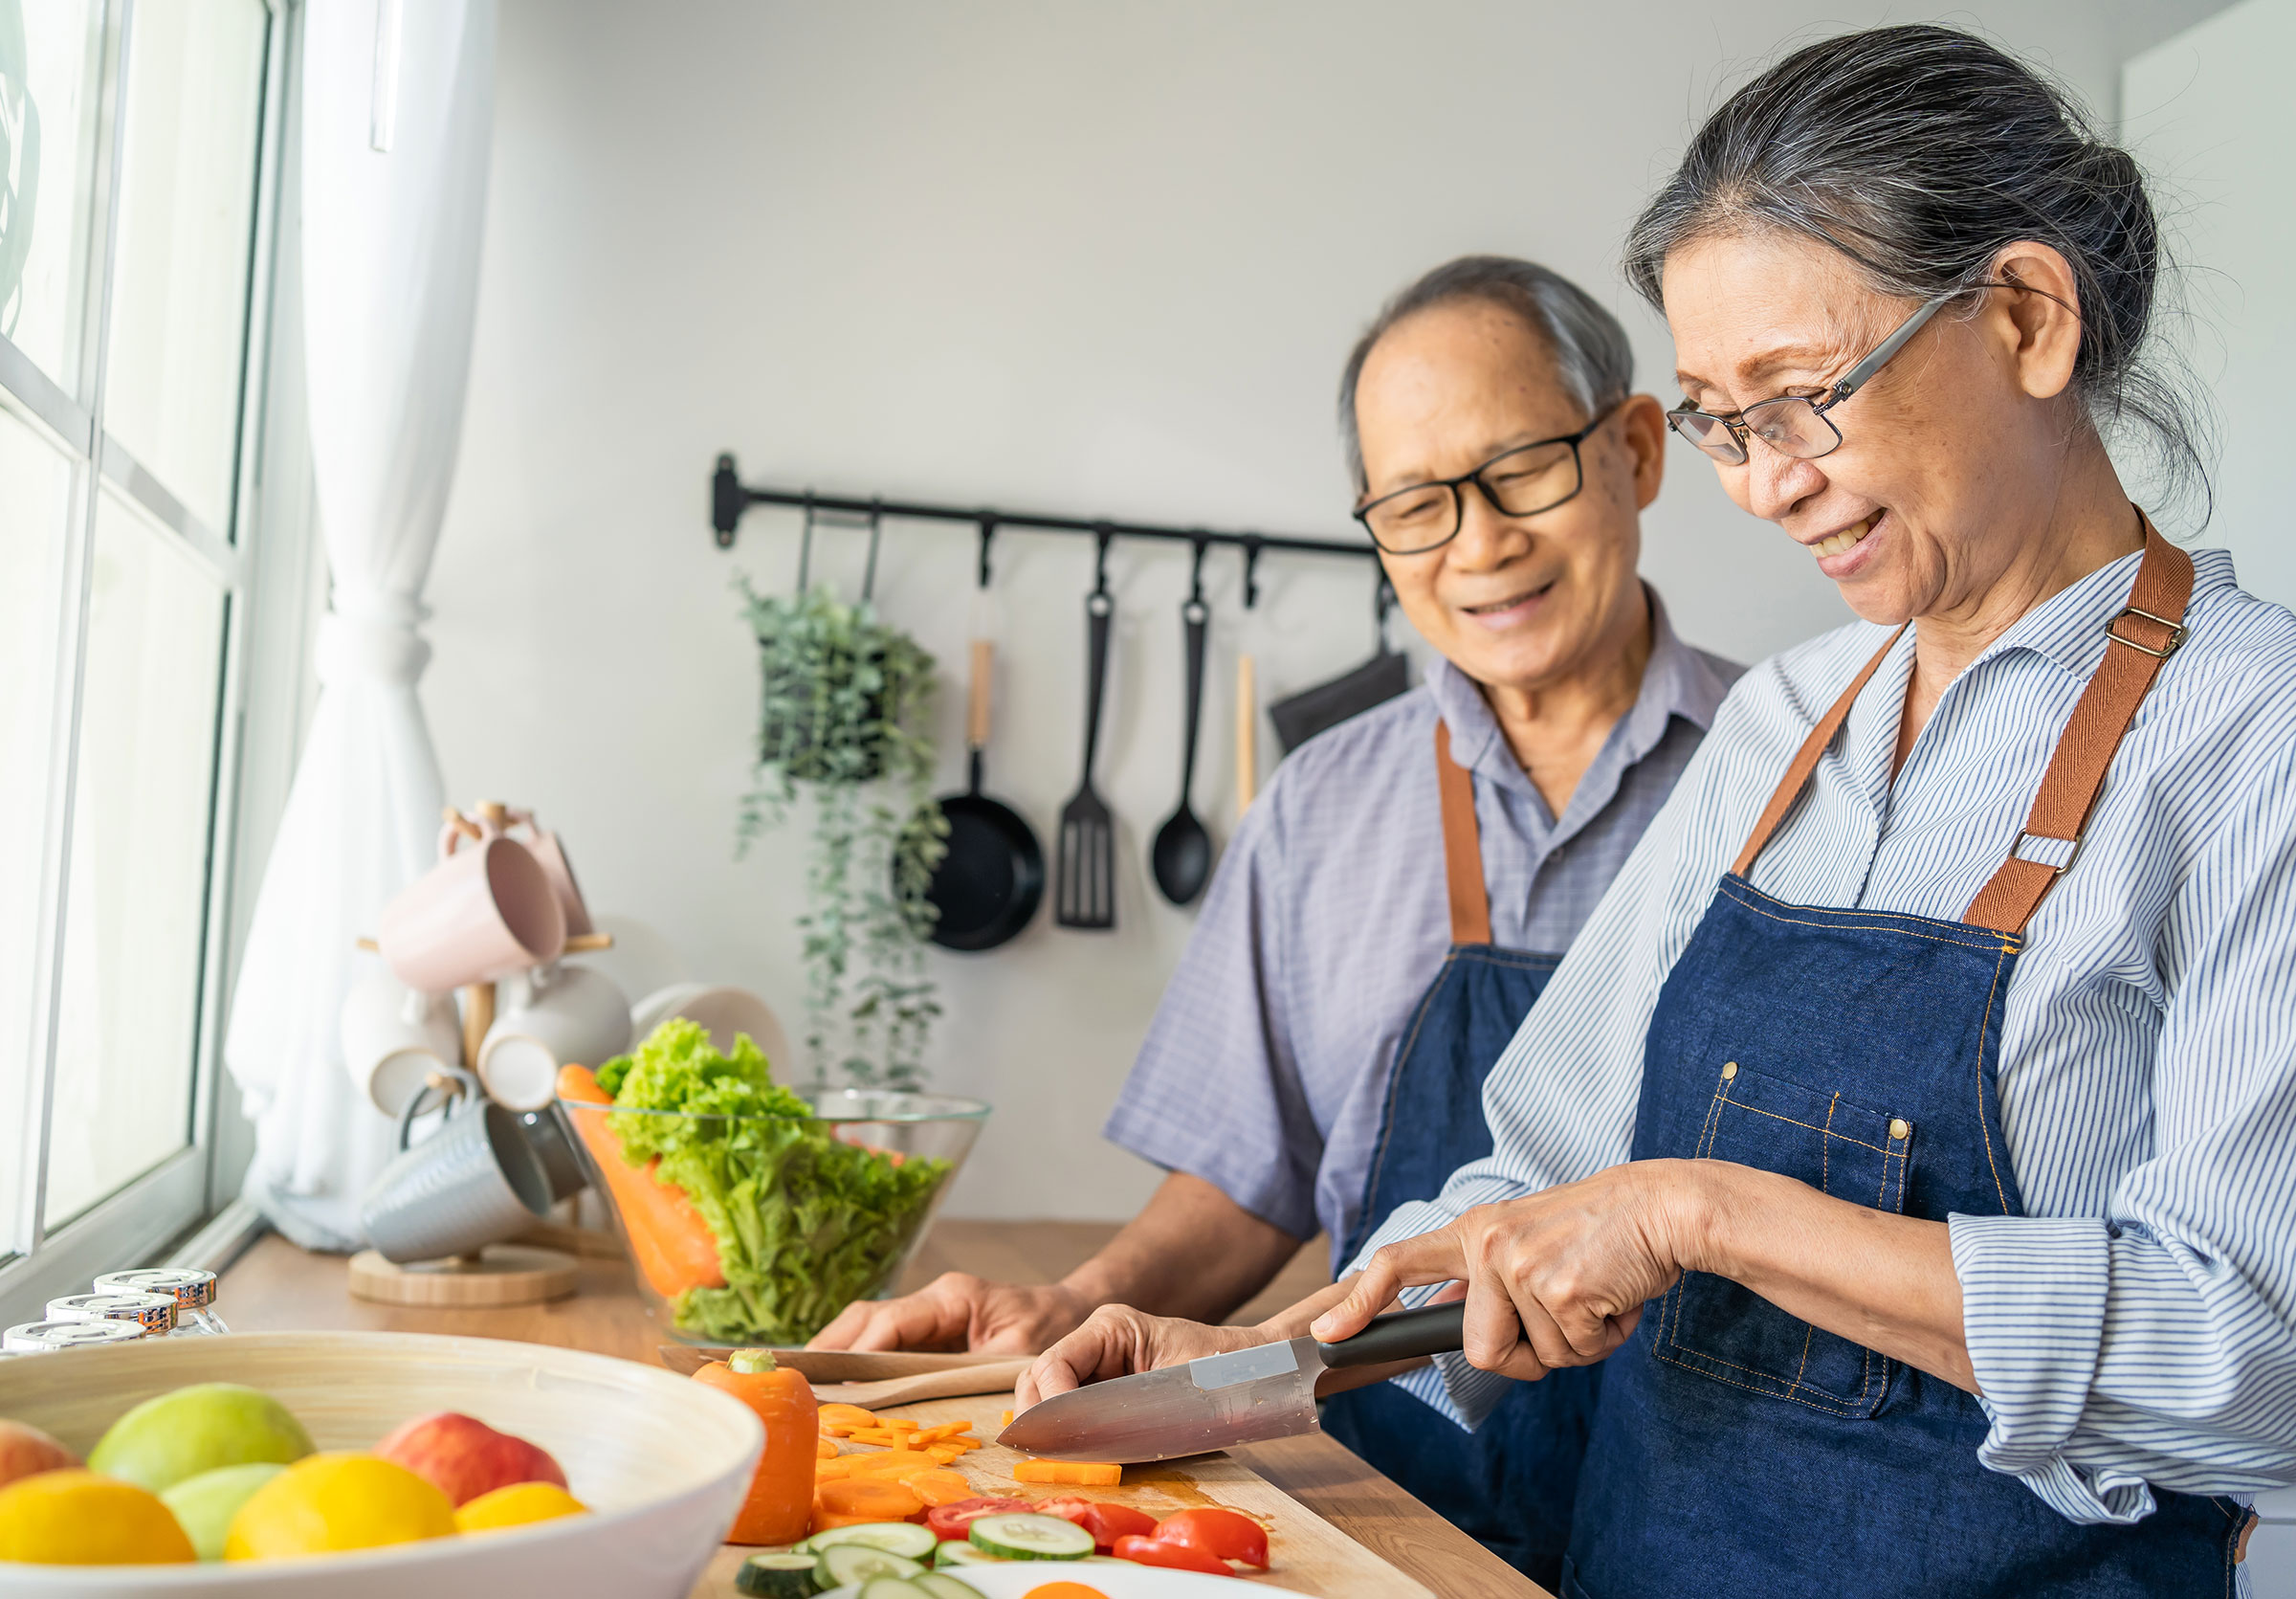 Un couple de retraités souriants sont devant un comptoir de cuisine et portent chacun un tablier. La femme tient un couteau et coupe des légumes.